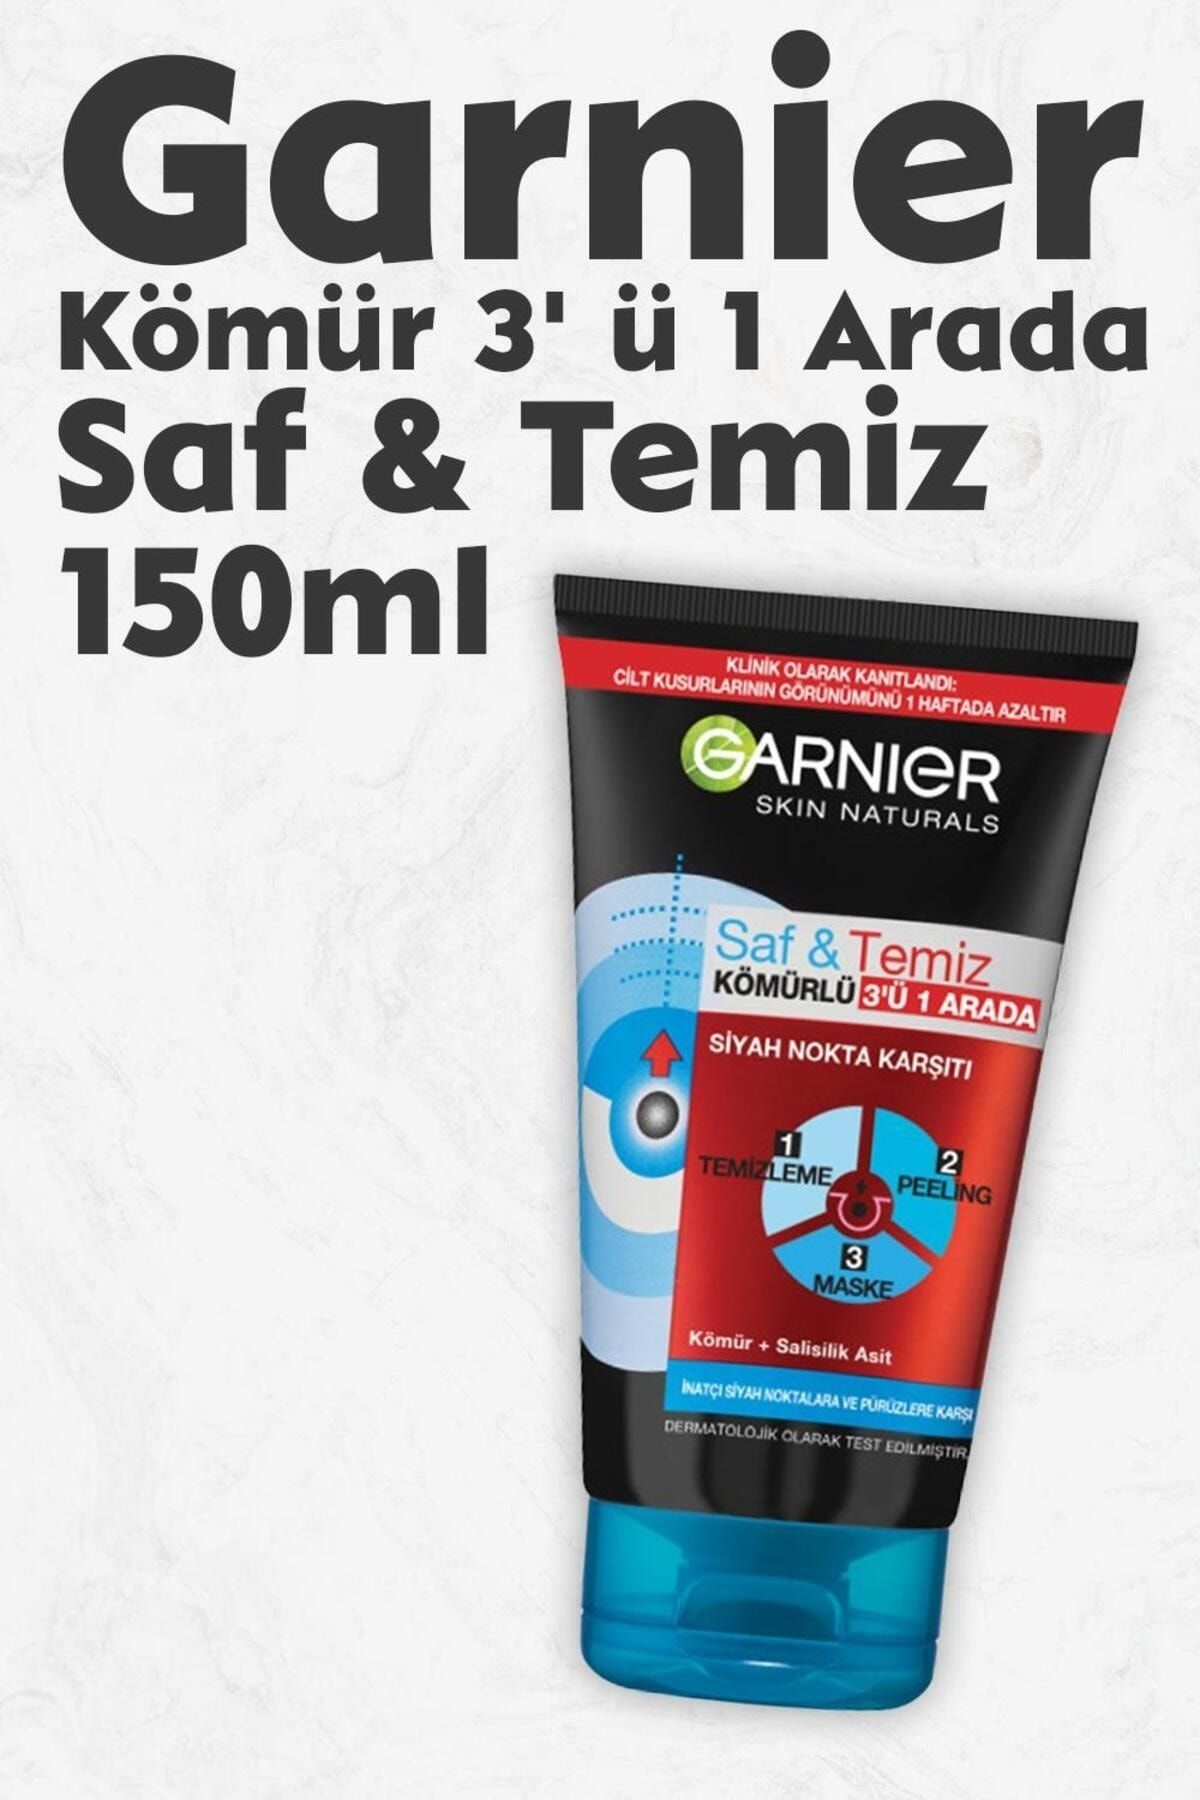 Garnier Kömür 3' ü 1 Arada Saf & Temiz 150 ml